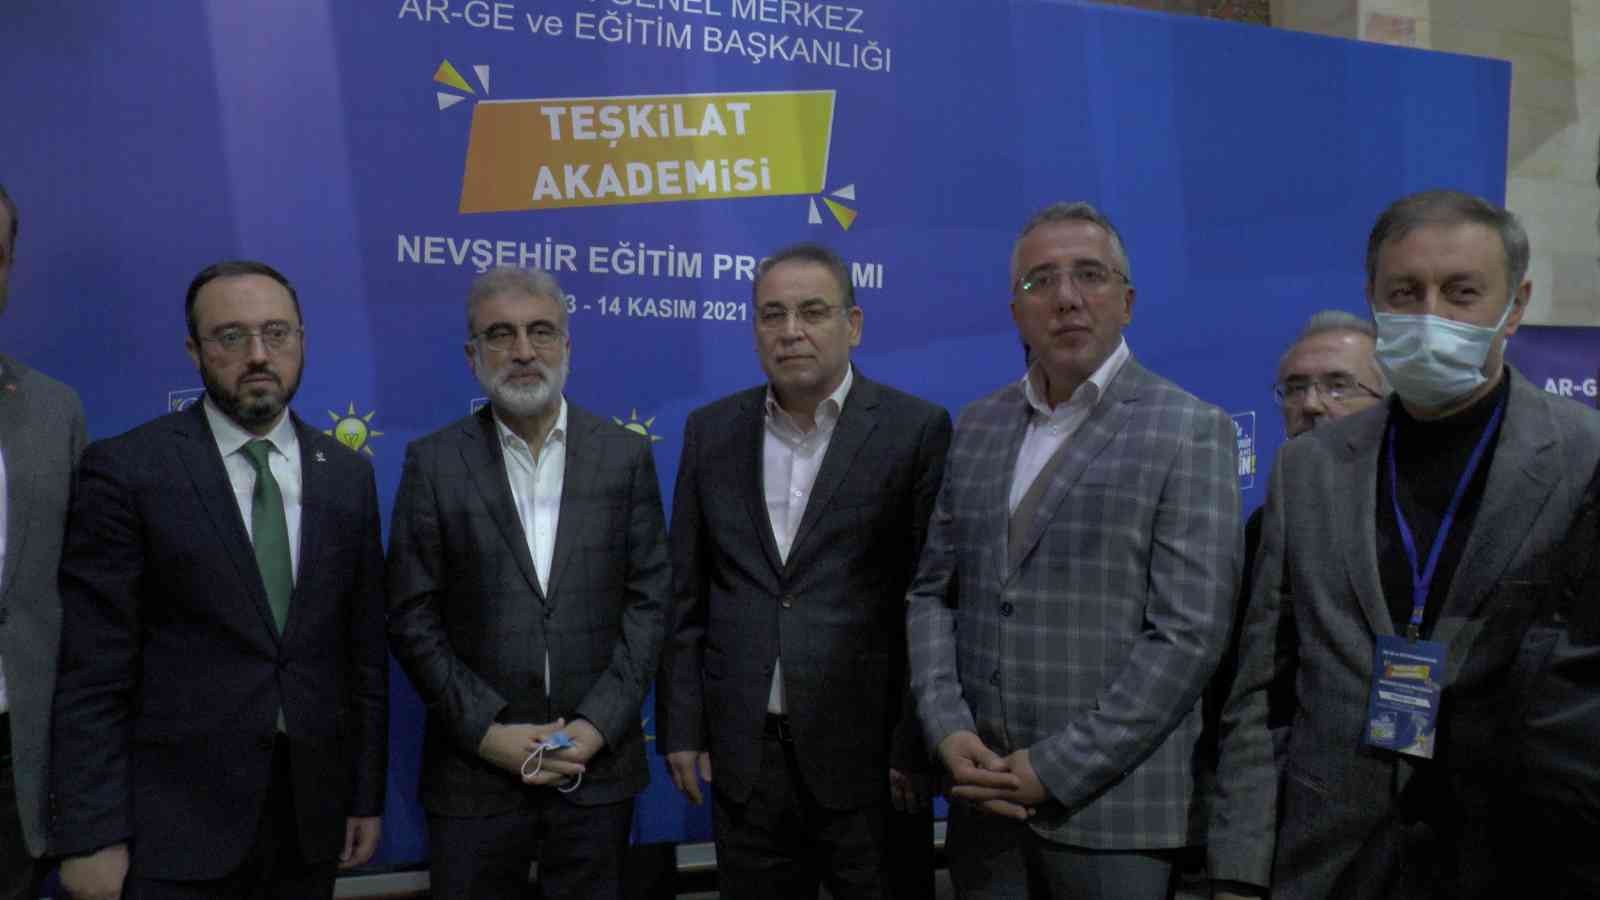 AK Parti Teşkilat Akademisi Nevşehir’de başladı #nevsehir